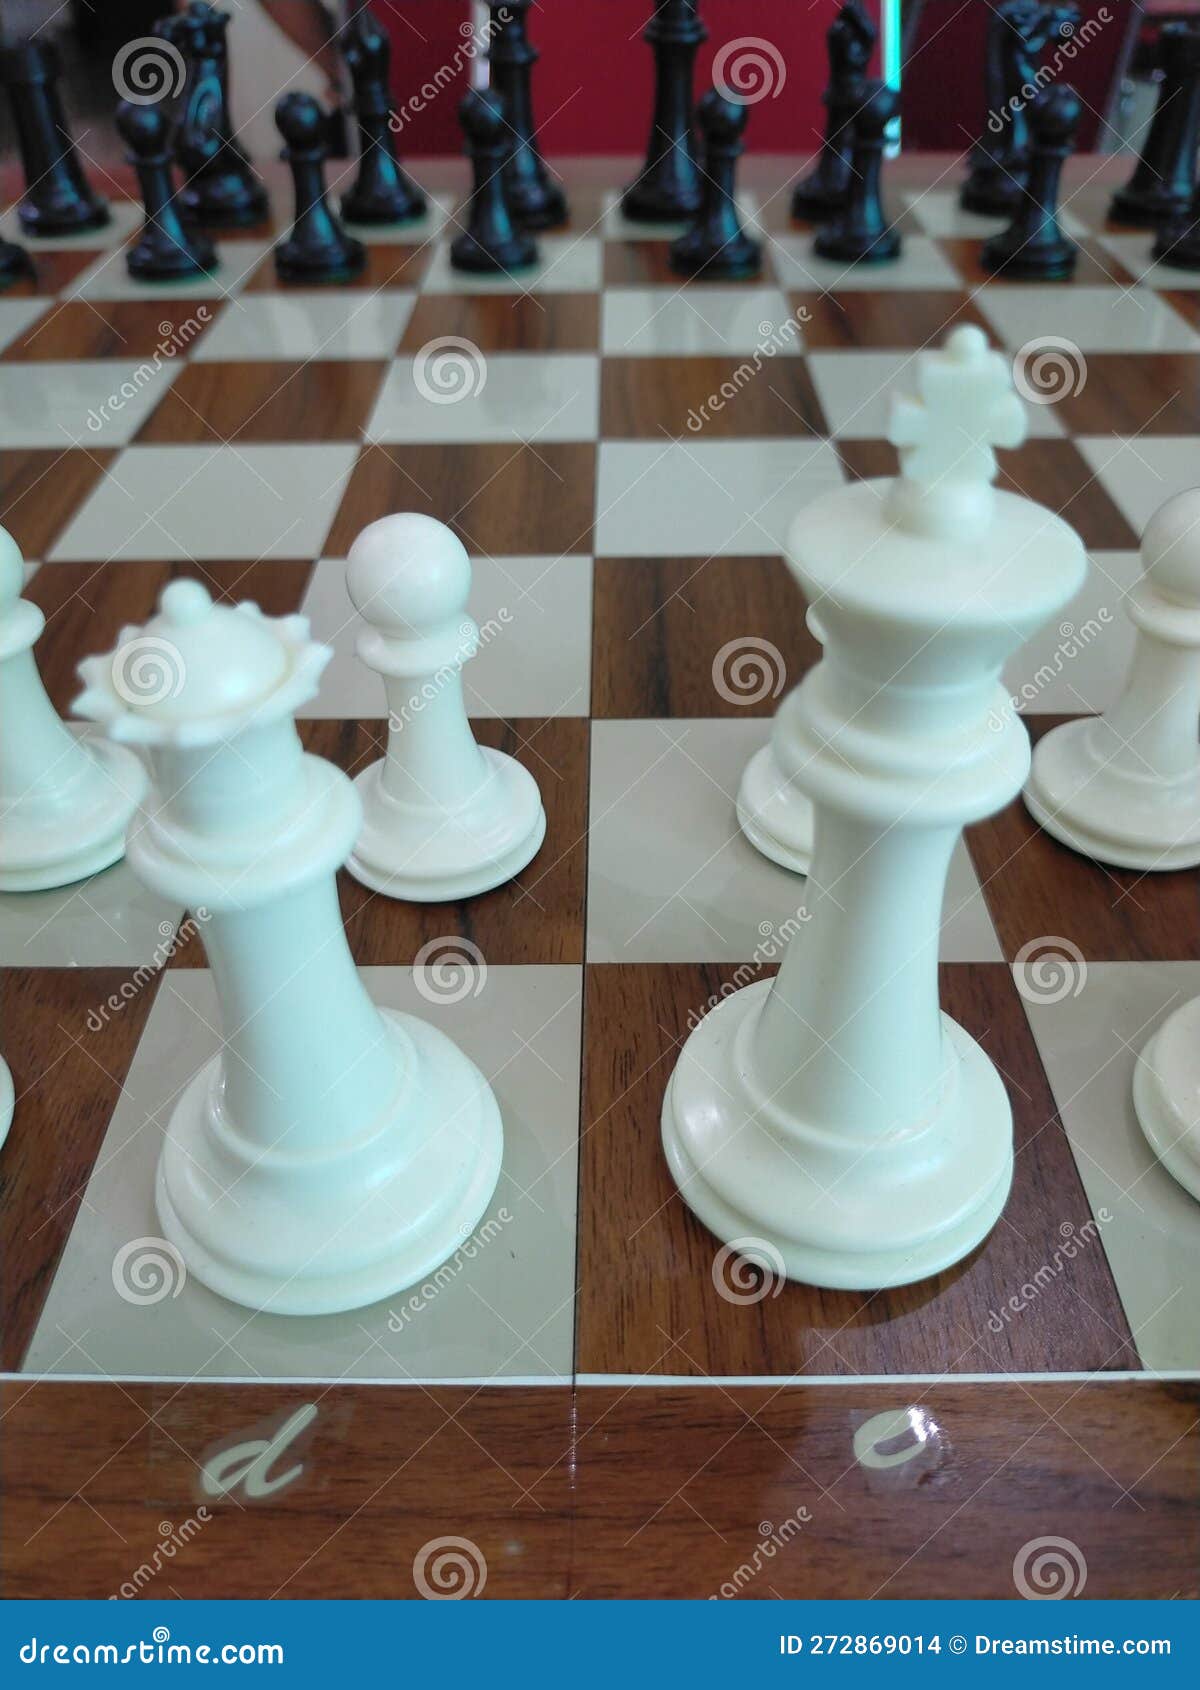 chess match profesional